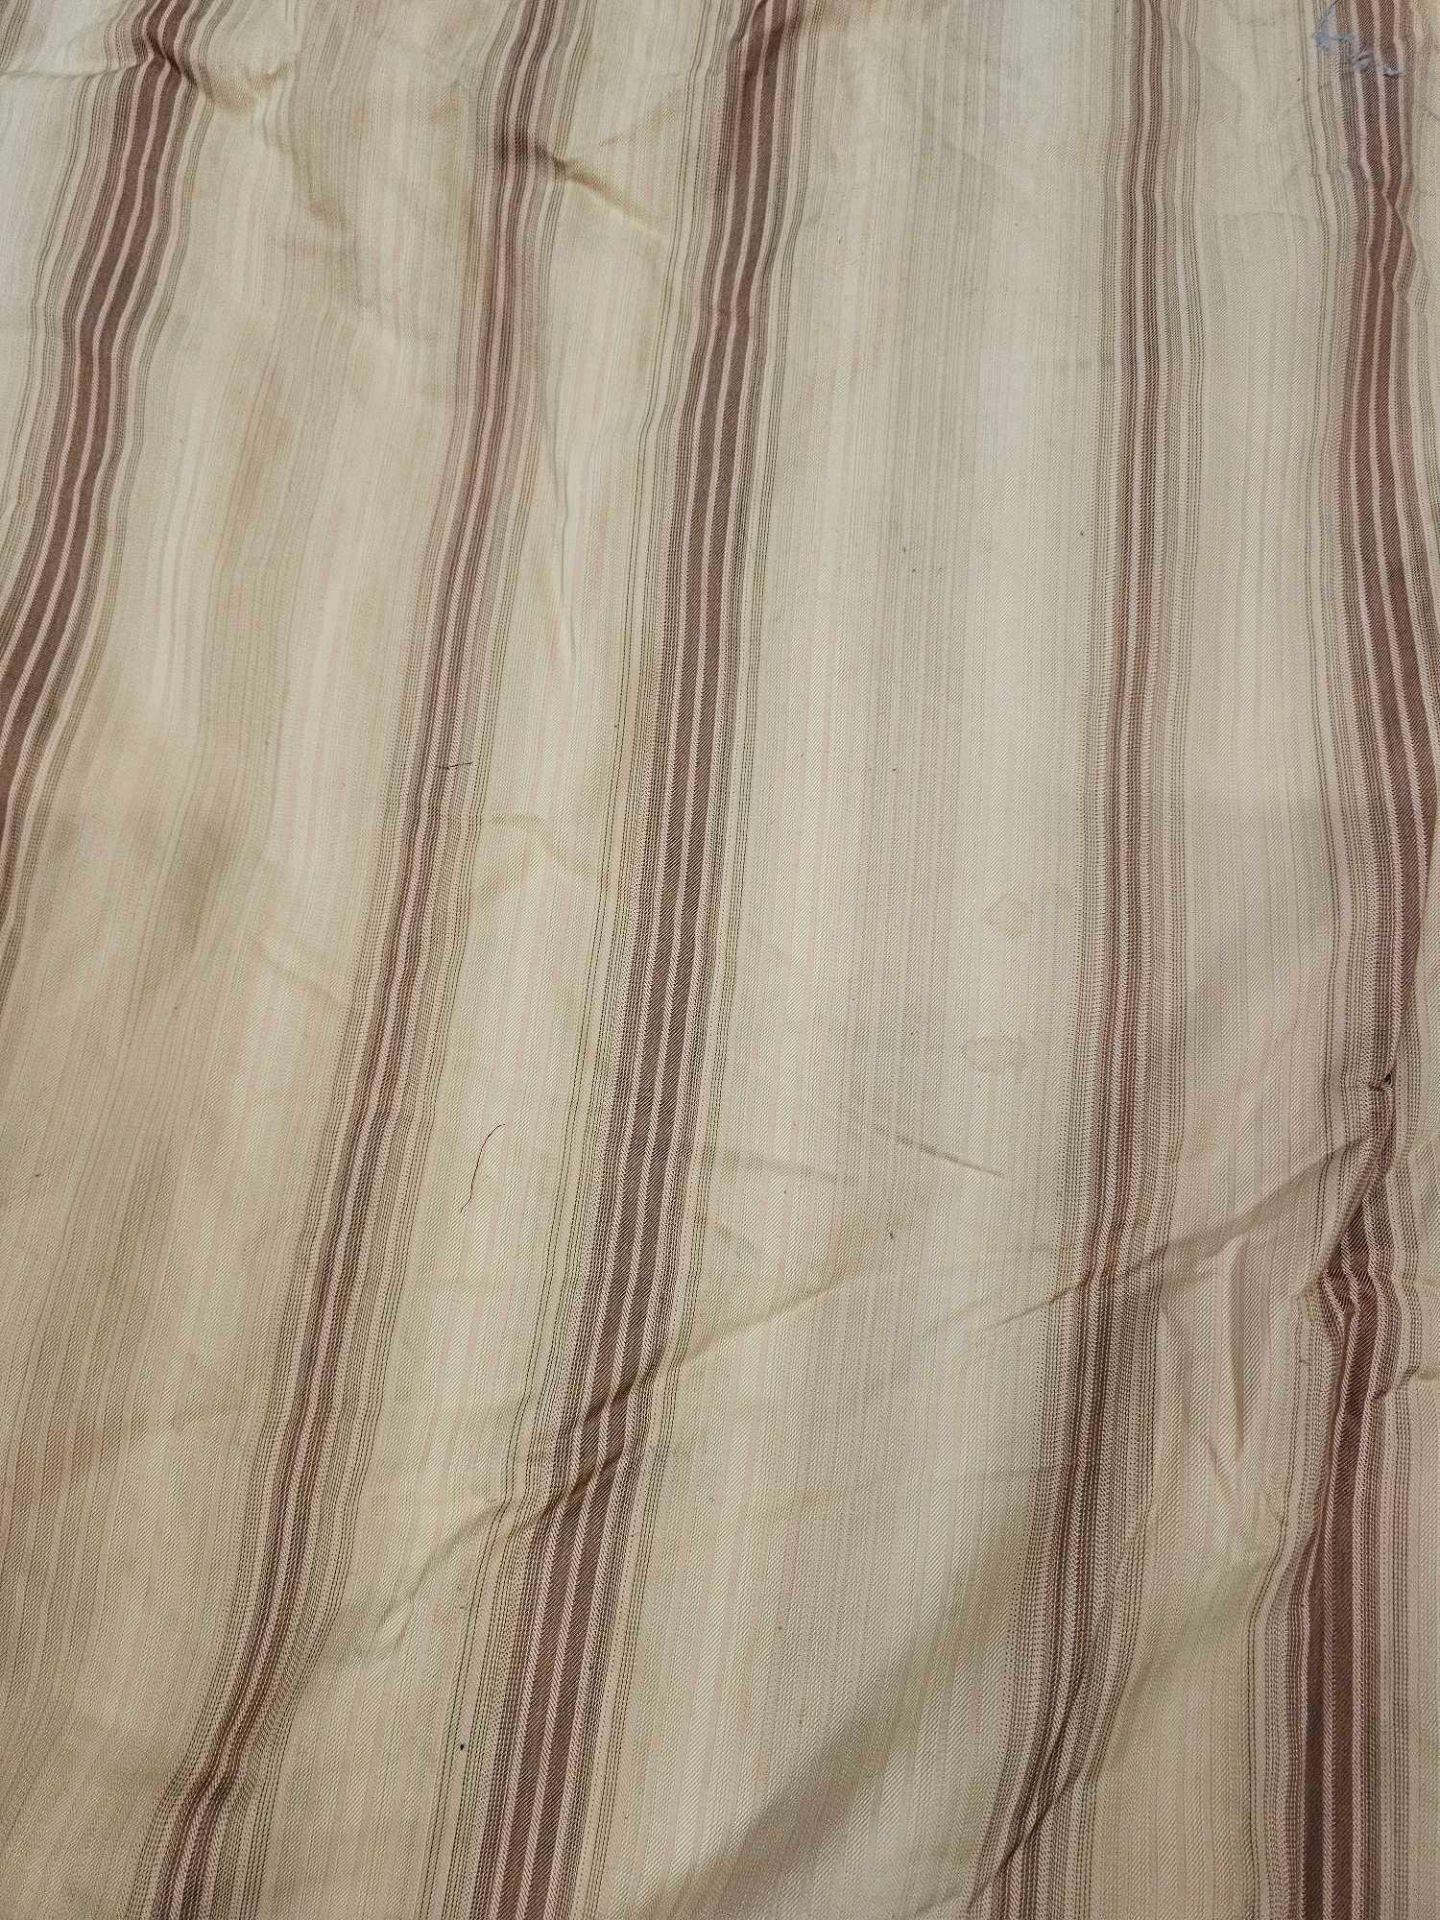 Pair Of Silk Drapes Striped Gold / Brown Size -cm 132 x 288 Ref Dorch 68 - Bild 3 aus 3